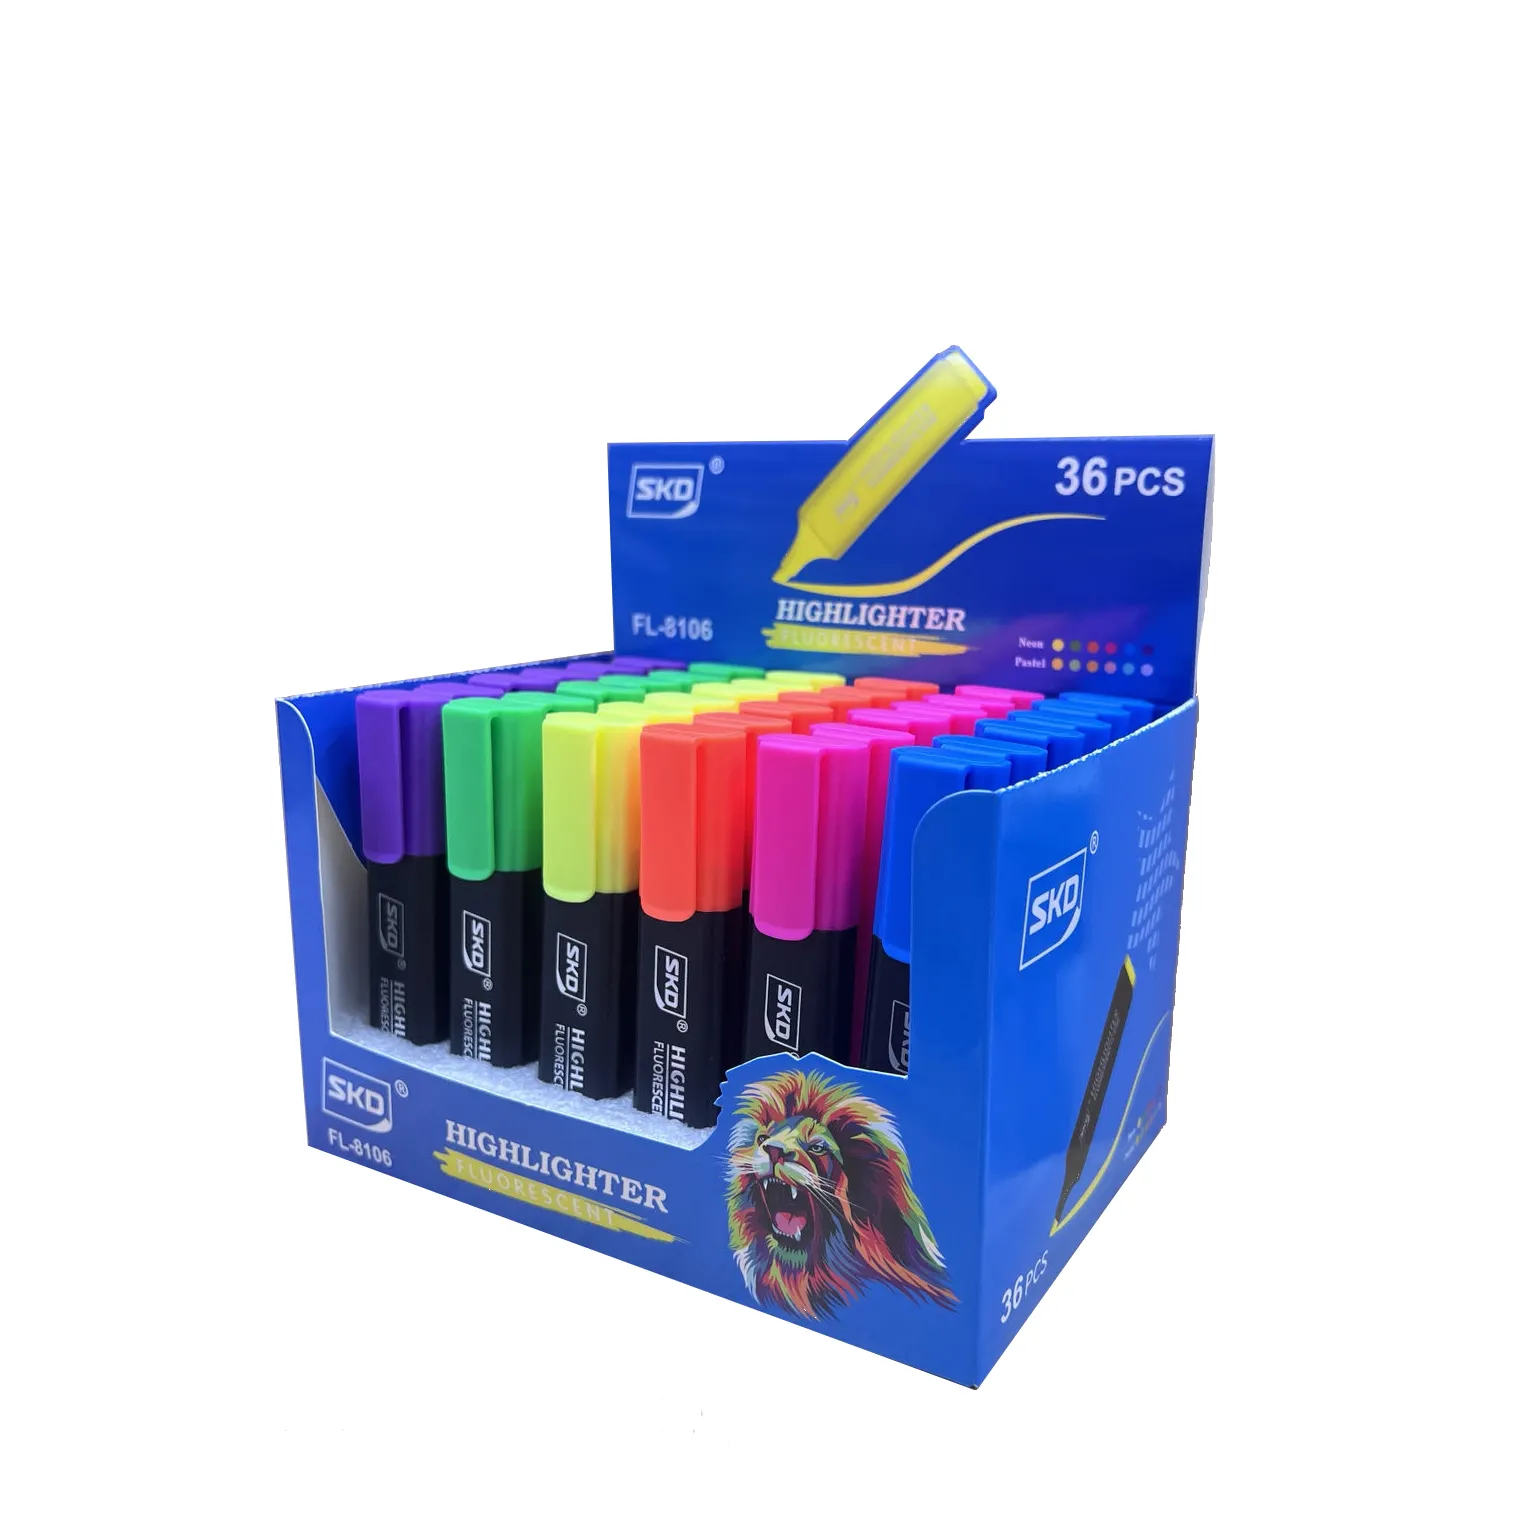 OEM/ODM fornitore accettabile evidenziatori colorati penna di dimensioni normali evidenziatore evidenziatore pennarello set con clip